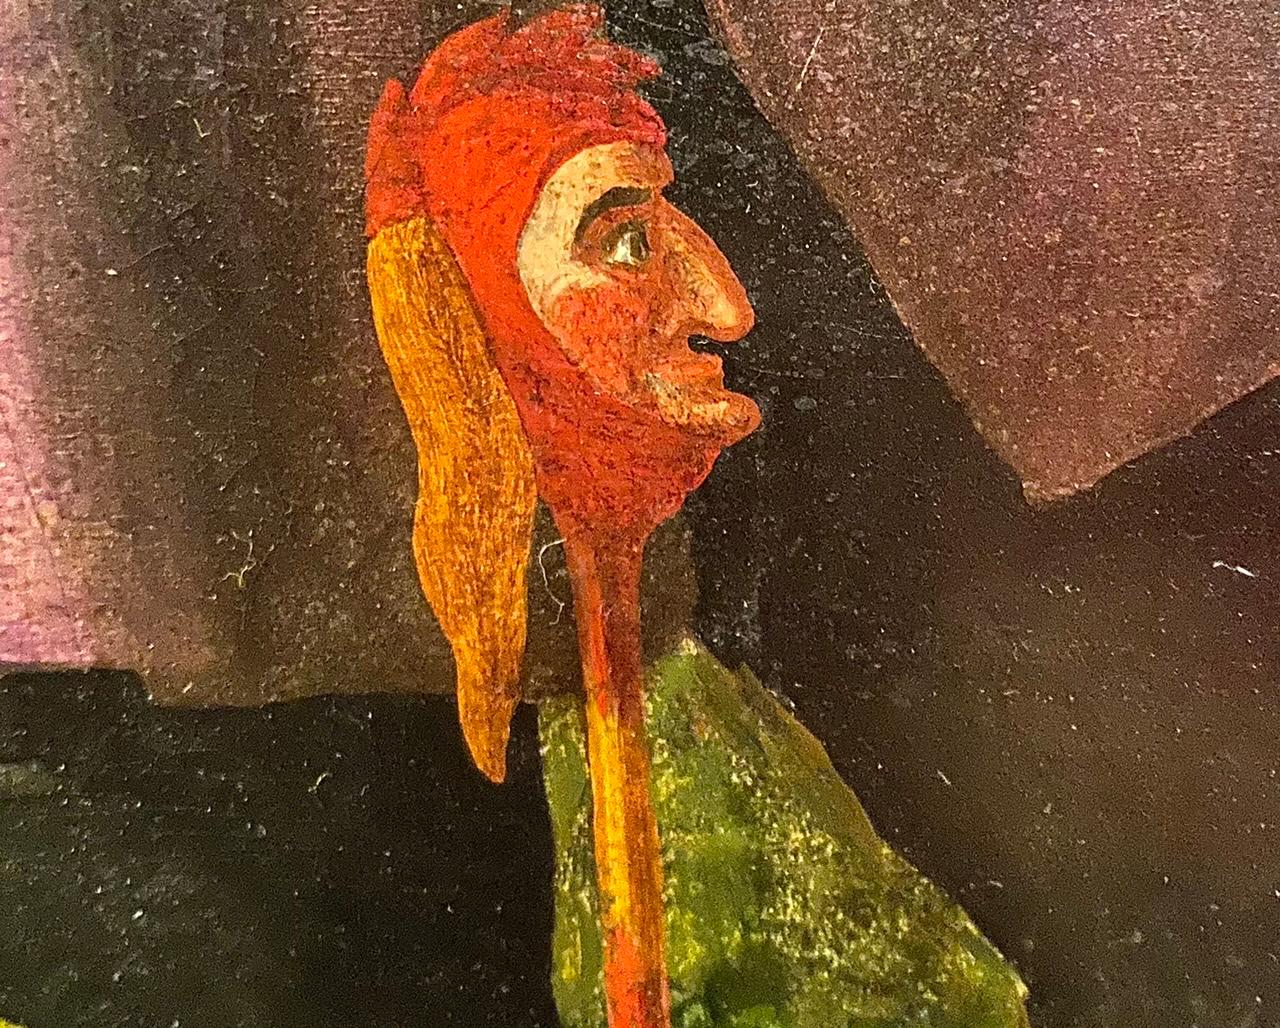 Adolphus M. Madot
Circa 1833 - 1861
Huile sur toile
Taille de l'image : 36 x 24 pouces (91,4 x 61 cm)
Cadre arqué de style préraphaélite 

Le sujet du présent tableau est le dialogue entre le bouffon Touchstone et le berger Corin dans la forêt